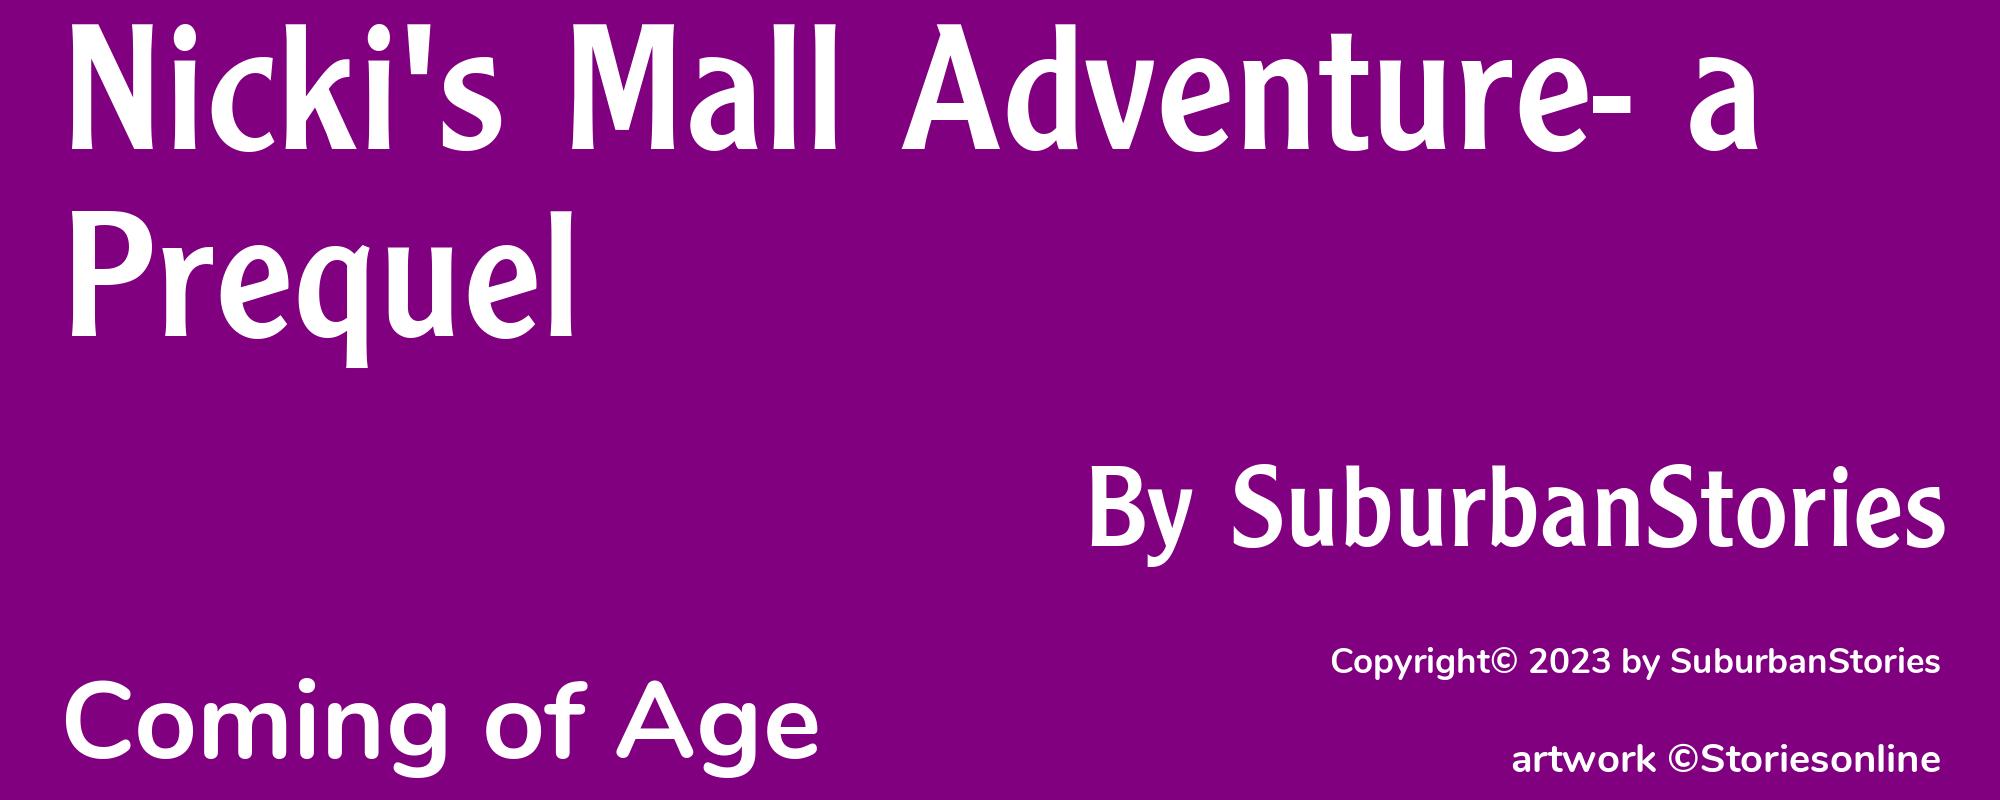 Nicki's Mall Adventure- a Prequel - Cover